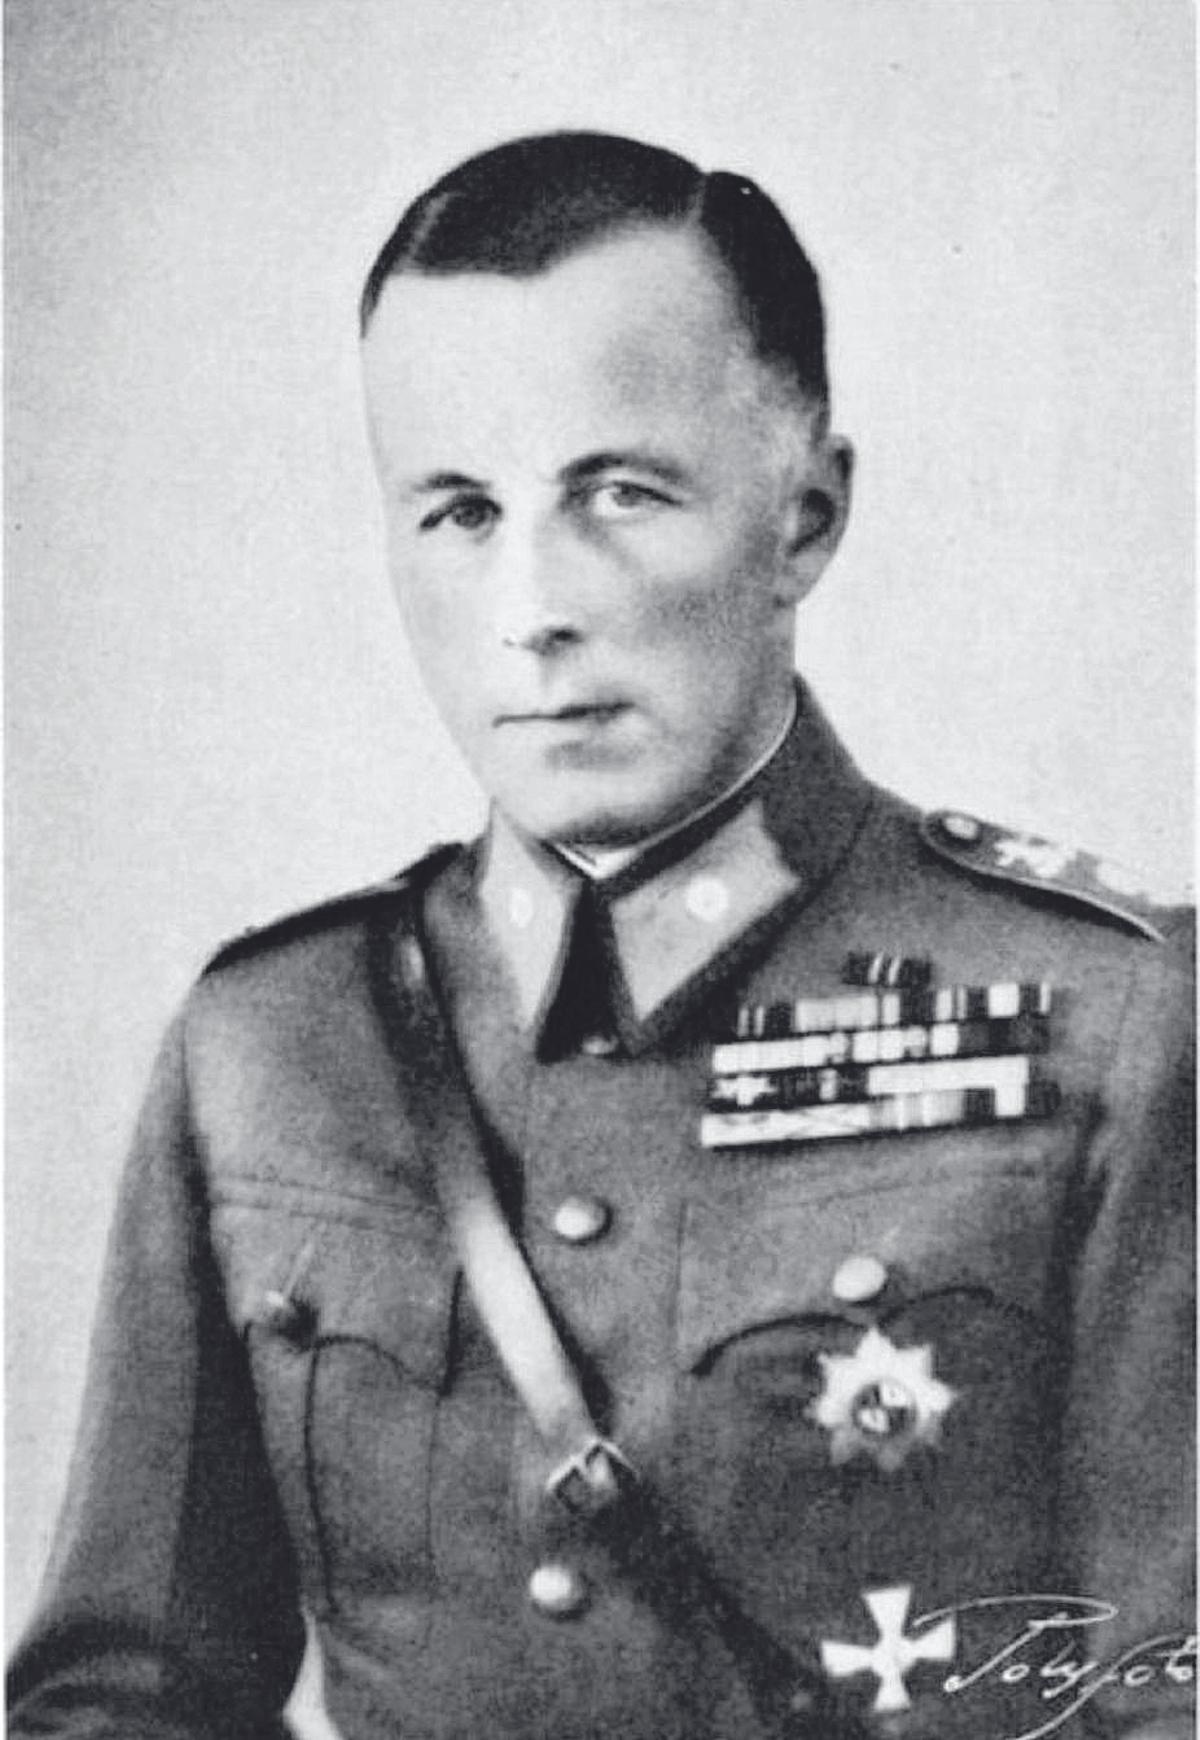 Coronel Carl von Haartman con el uniforme militar finés.